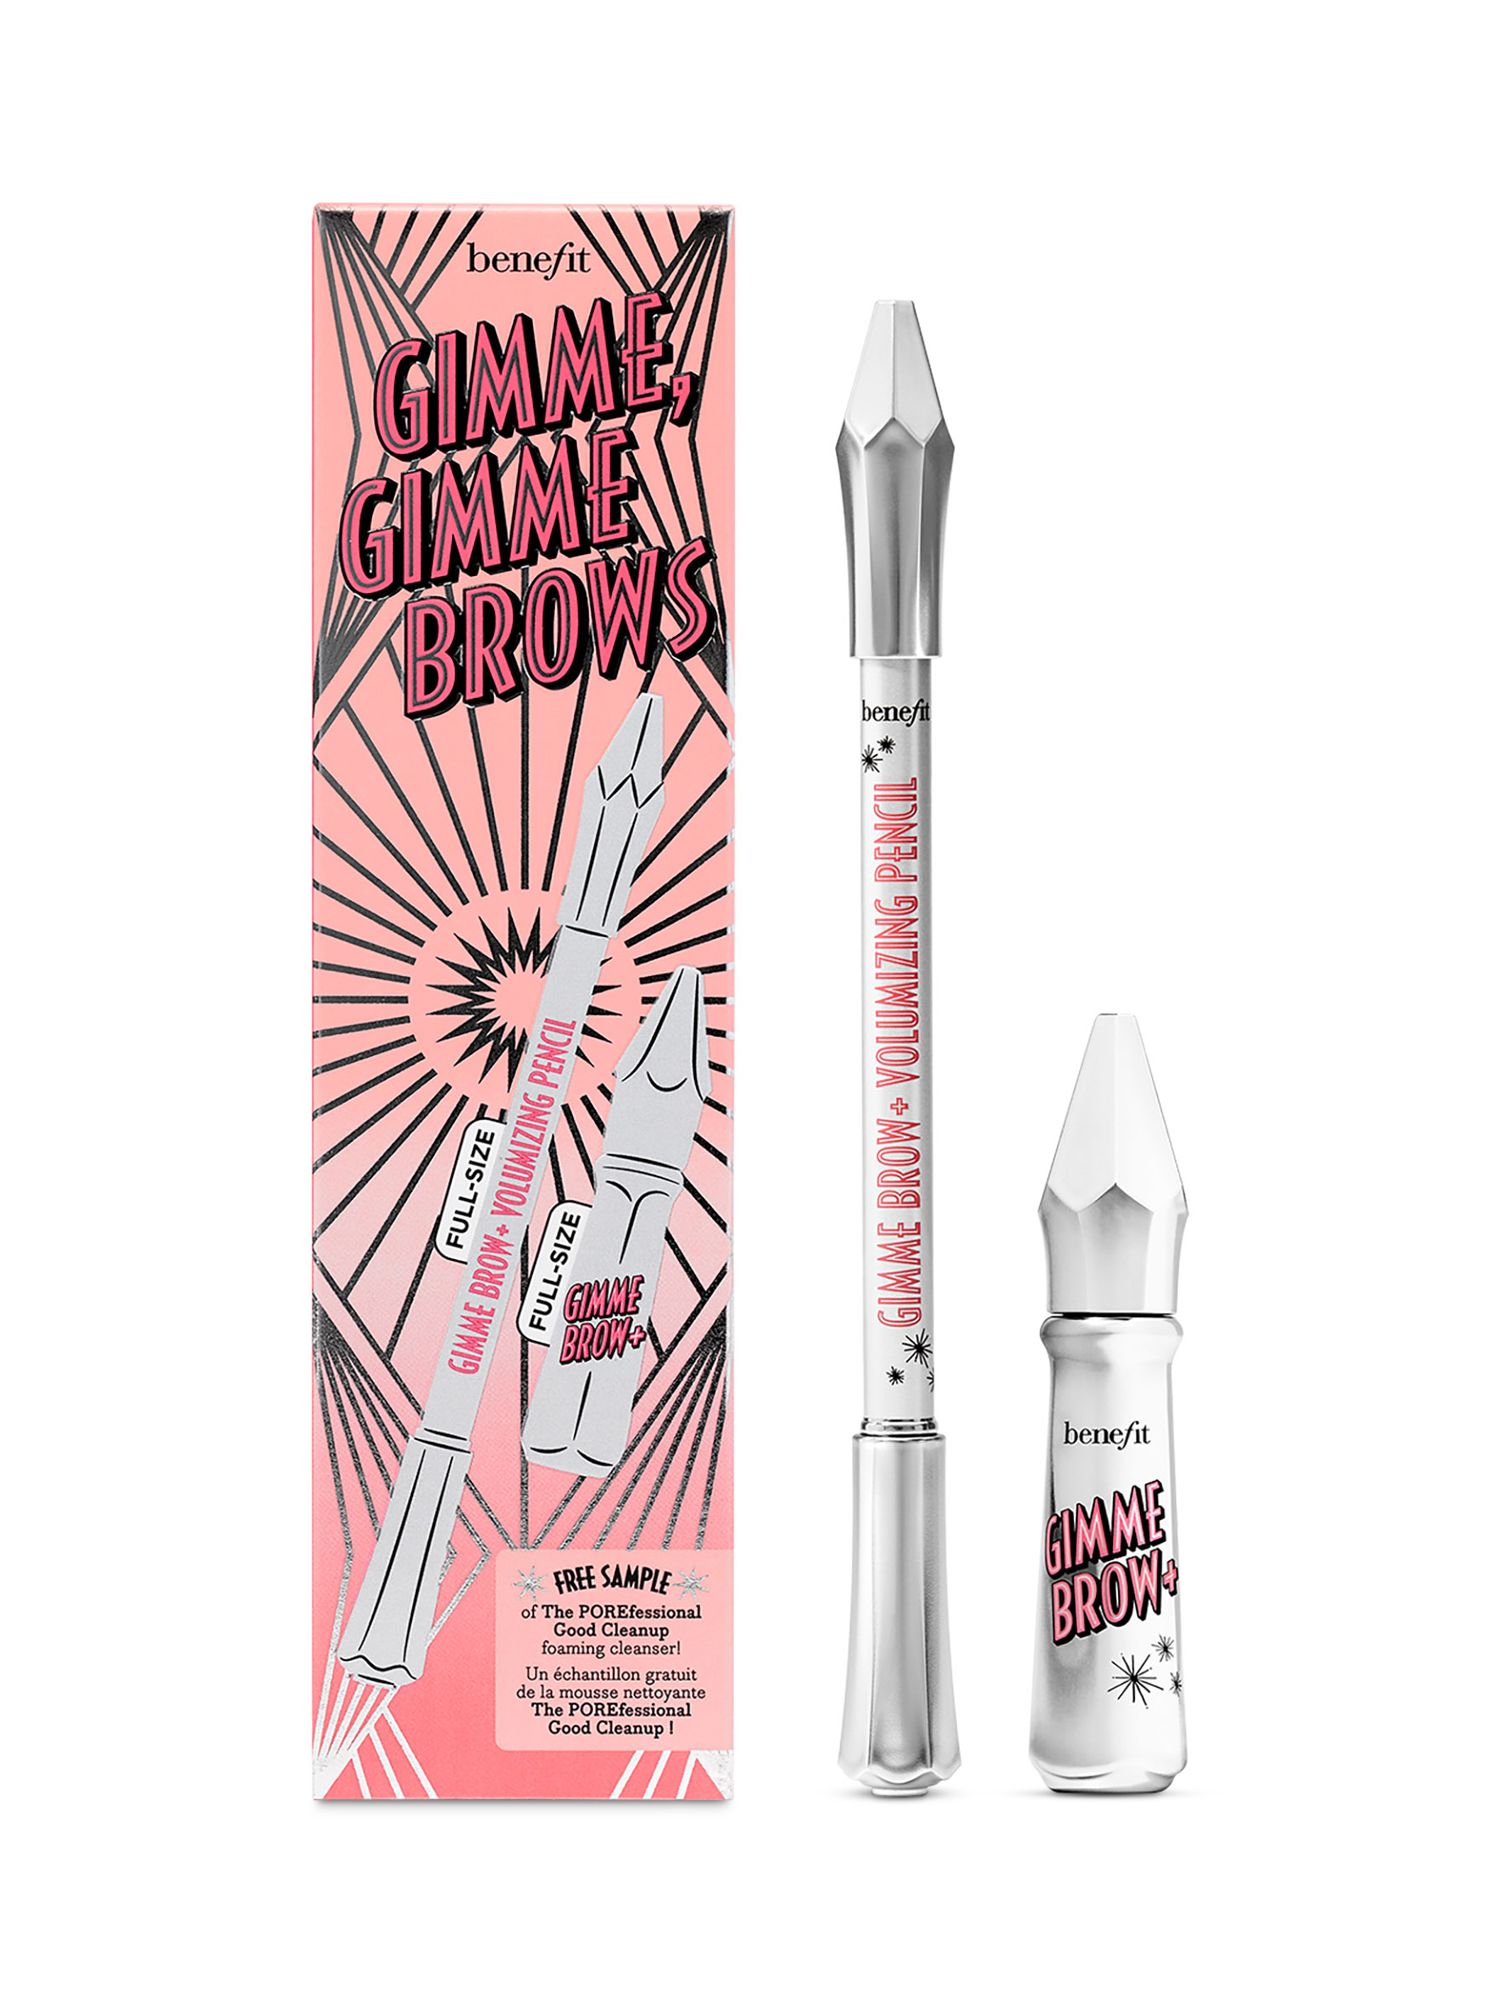 Benefit Gimme Gimme Brows Gimme Brow+ & Gimme Brow+ Volumising Pencil Makeup Gift Set, Shade 3.5 1